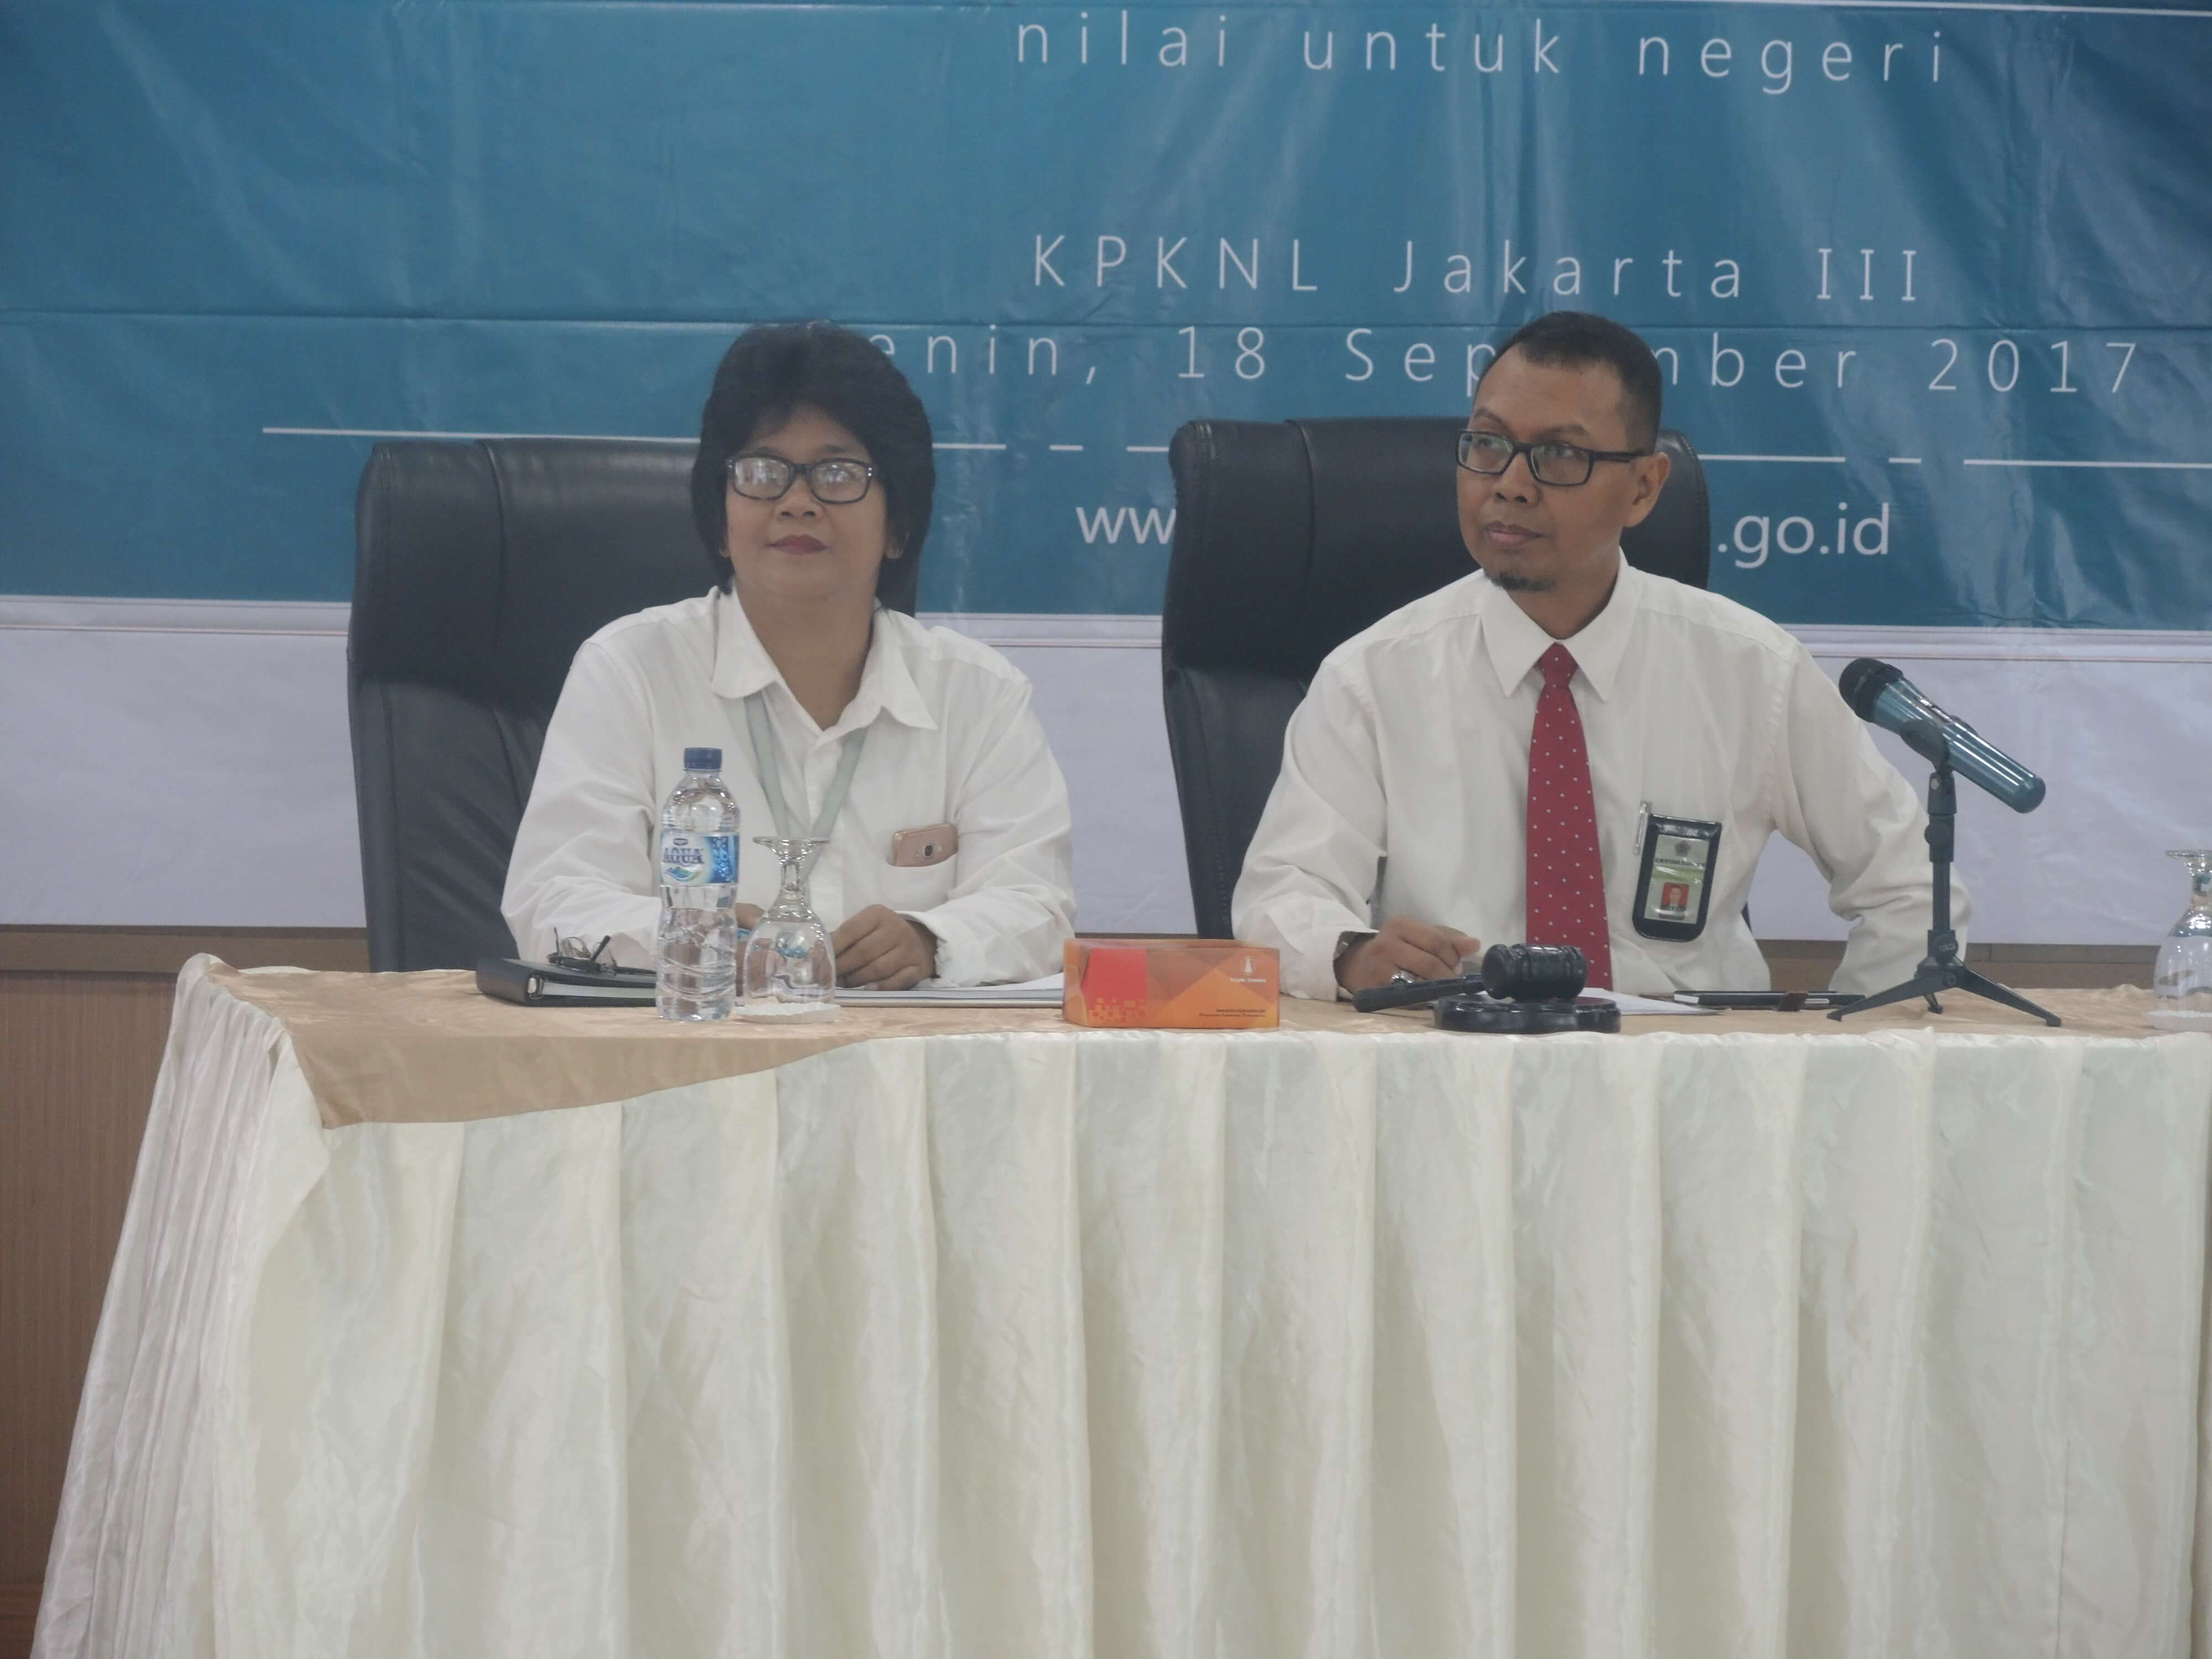 Gelar Bimtek KPKNL Jakarta III Undang 50 Satker